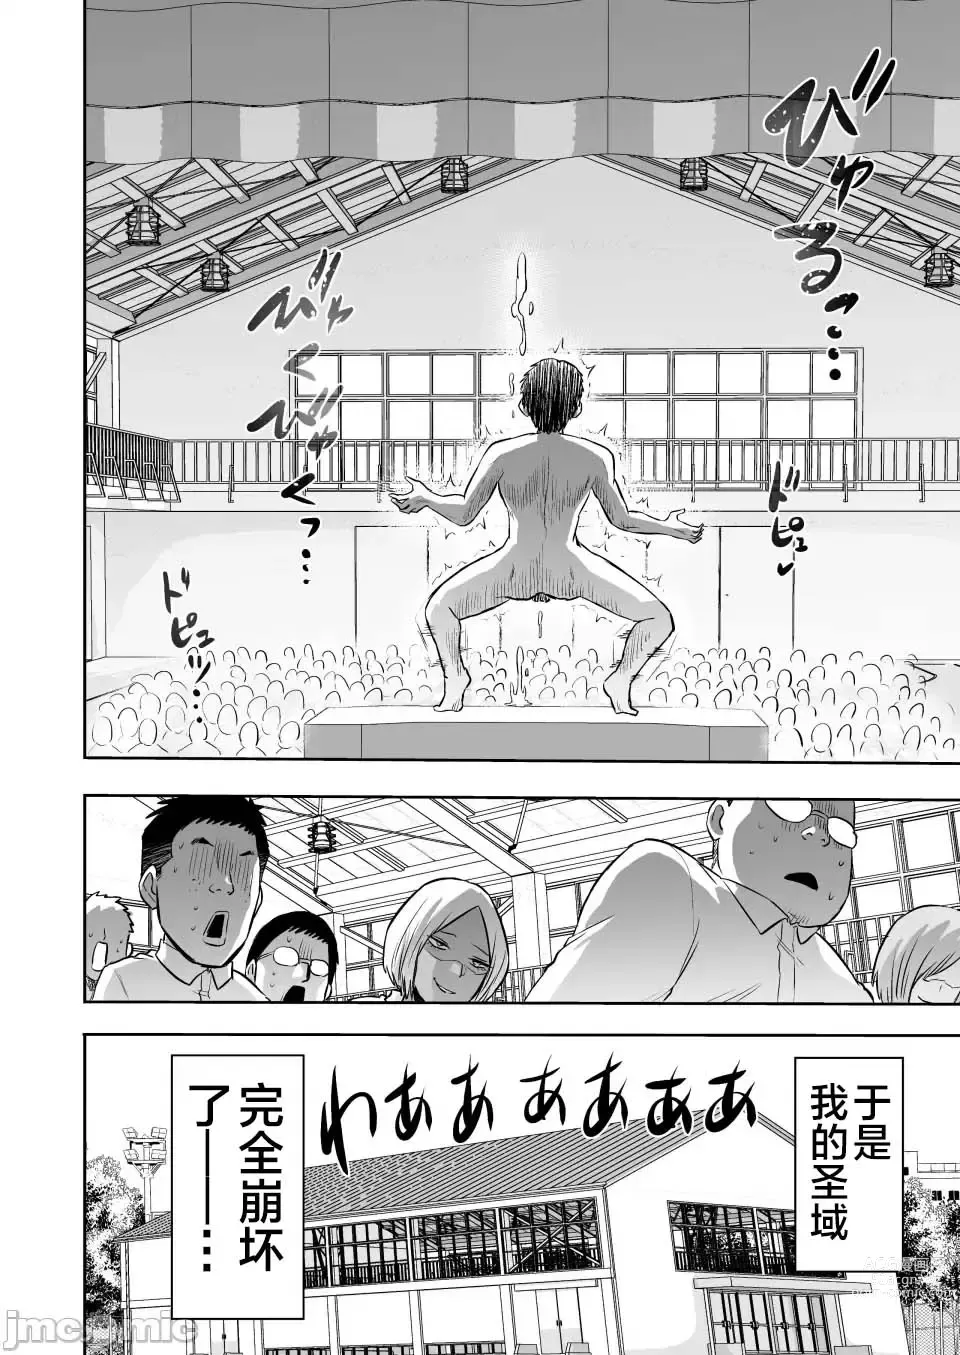 Page 50 of doujinshi kankaku no parafiria